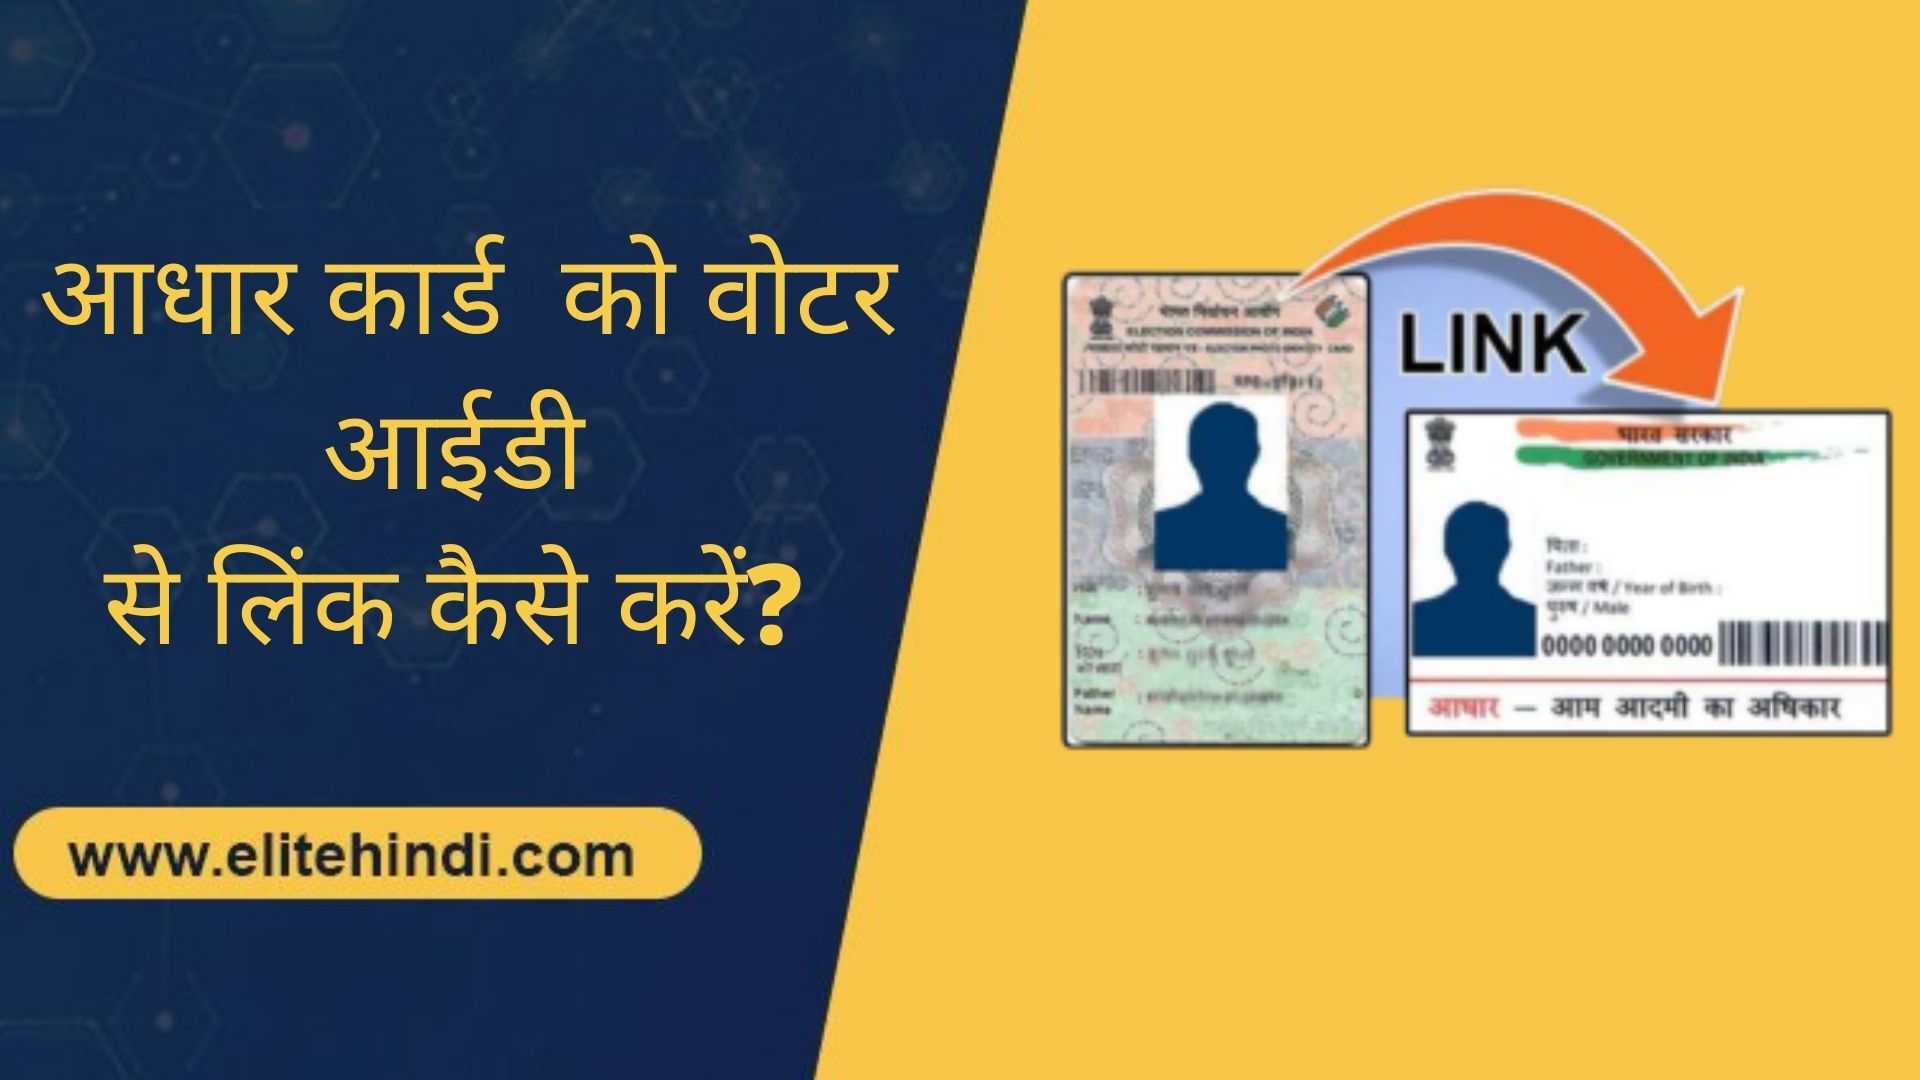 आधार कार्ड (Aadhaar Card) को वोटर आईडी (Voter ID) से लिंक कैसे करें? जानें पूरी जानकारी